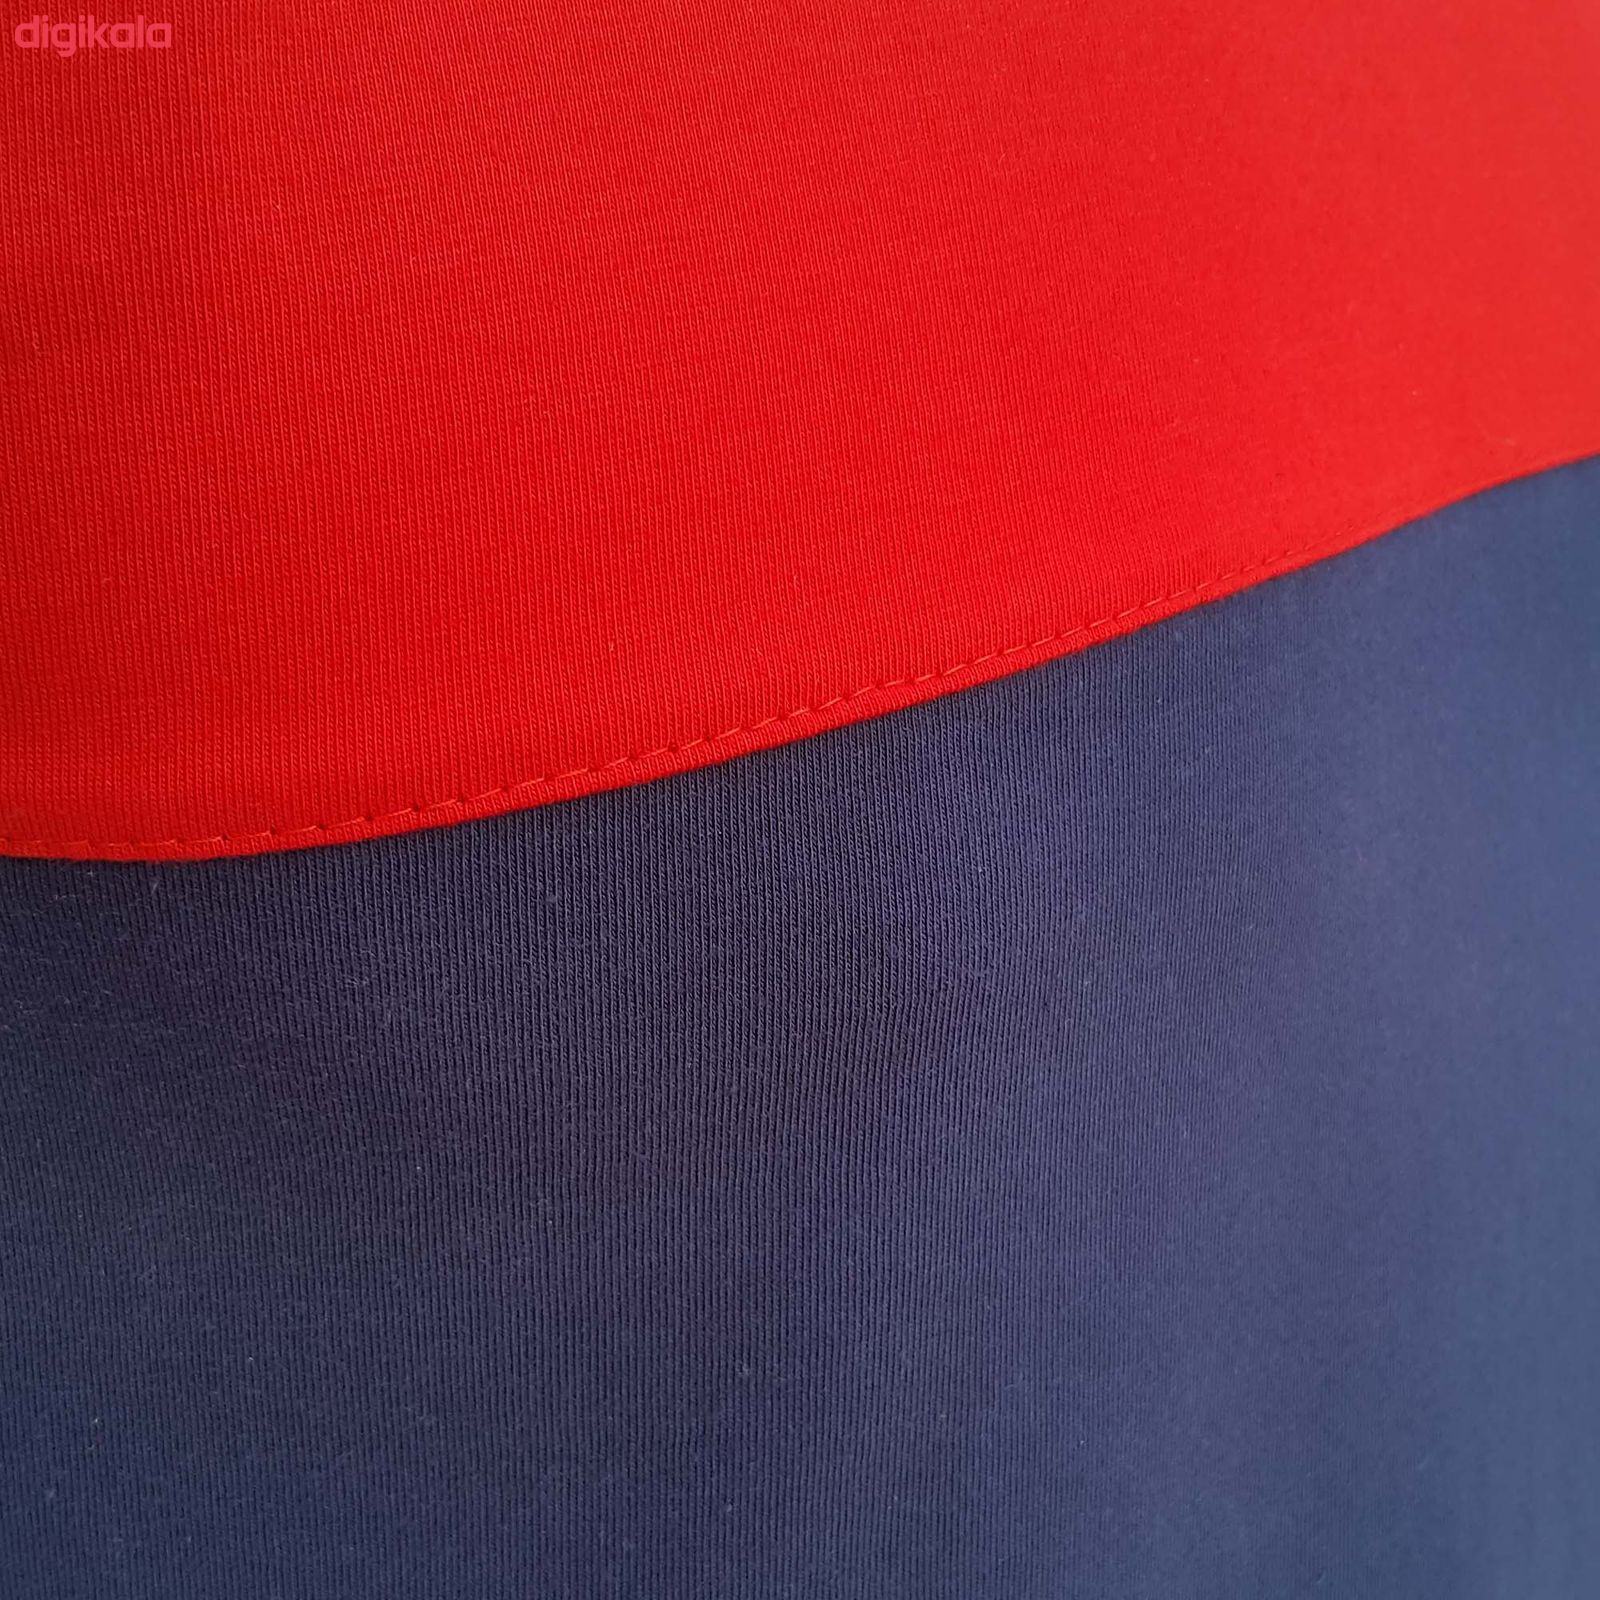  تی شرت آستین کوتاه مردانه طرح آژاکس کد A253Gرنگ قرمز